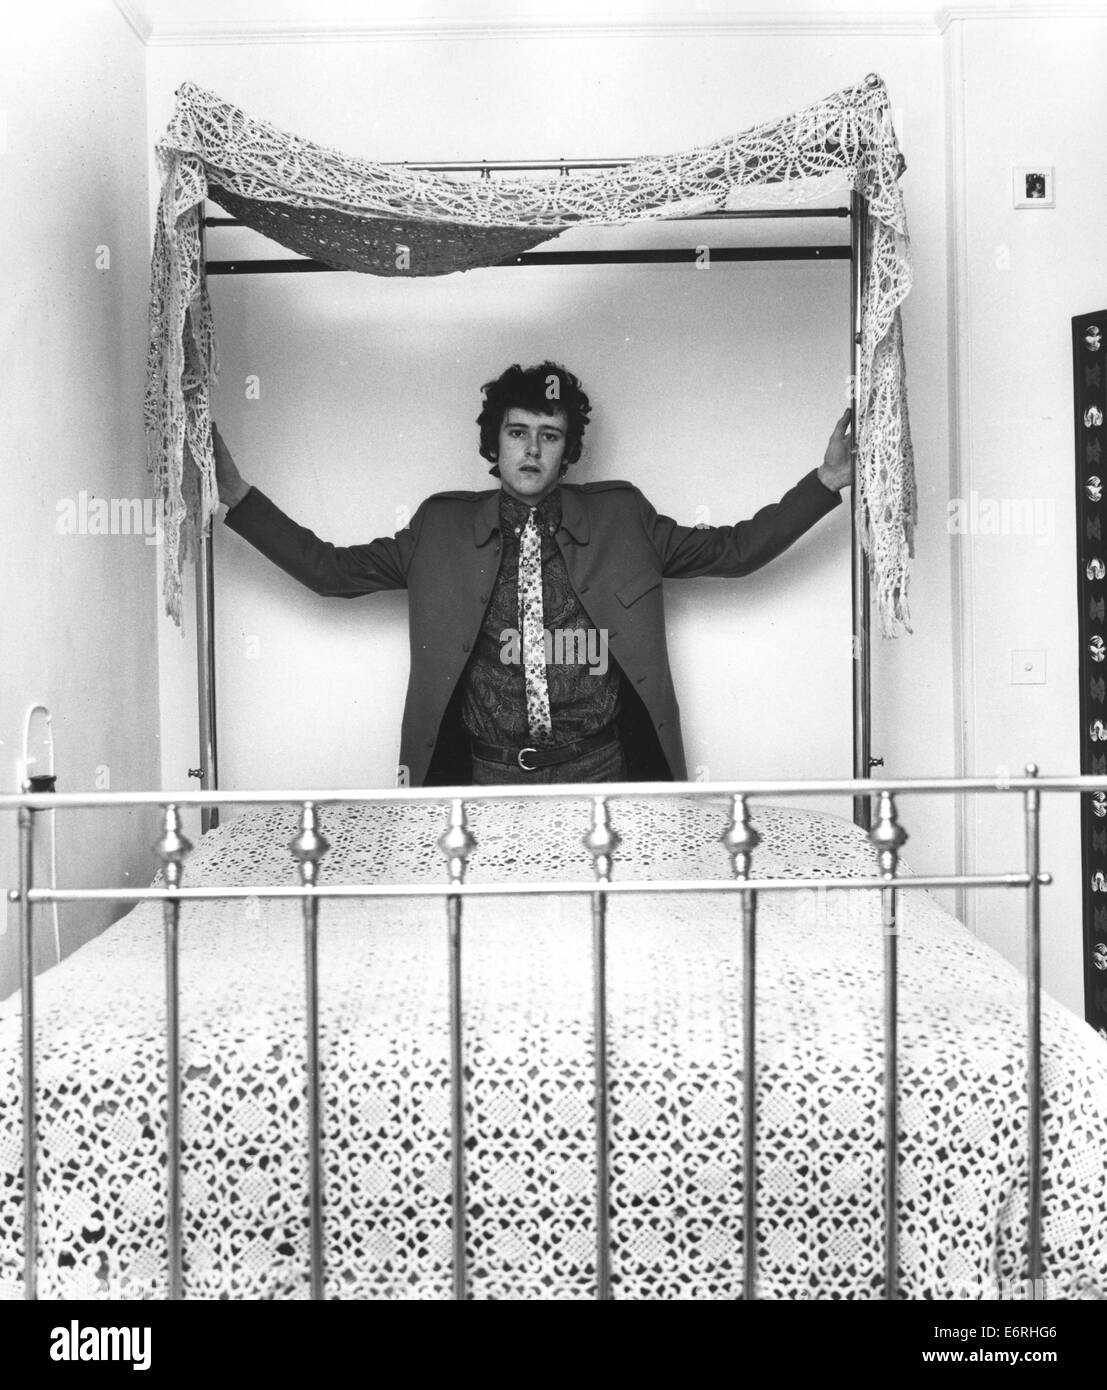 London, UK, UK. 2. Oktober 1970. DONOVAN (geb. DONOVAN PHILIPS LEITCH, 10. Mai 1946) ist eine schottische Sängerin, Songwriter und Gitarrist. Er entwickelte einen eklektischen und unverwechselbaren Stil, das Folk, Jazz, Pop, Psychedelia und Weltmusik (insbesondere Calypso) gemischt. Bild - Maida Vale, Paddington, London, England - Sänger Musiker DONOVAN, 19, entspannen in Maida Vale nach Hause hinter seinem viktorianischen Messingbett mit Spitze gehäkelt Baldachin. © KEYSTONE Pictures/ZUMAPRESS.com/Alamy Live-Nachrichten Stockfoto